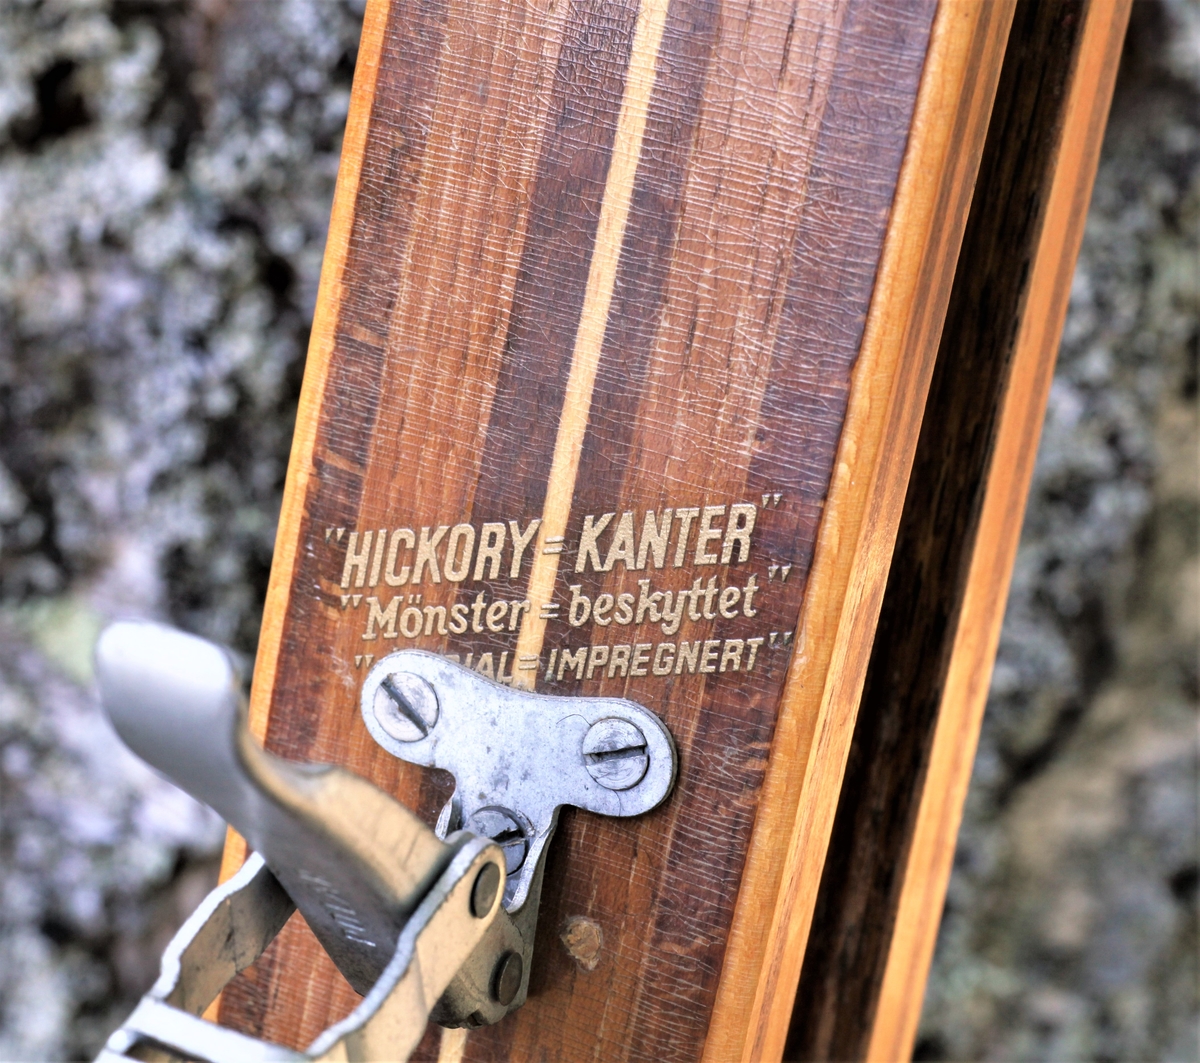 Et par ski fra skifabrikant Madshus med hickorykanter. Skibinding fra Bredesen Polar.